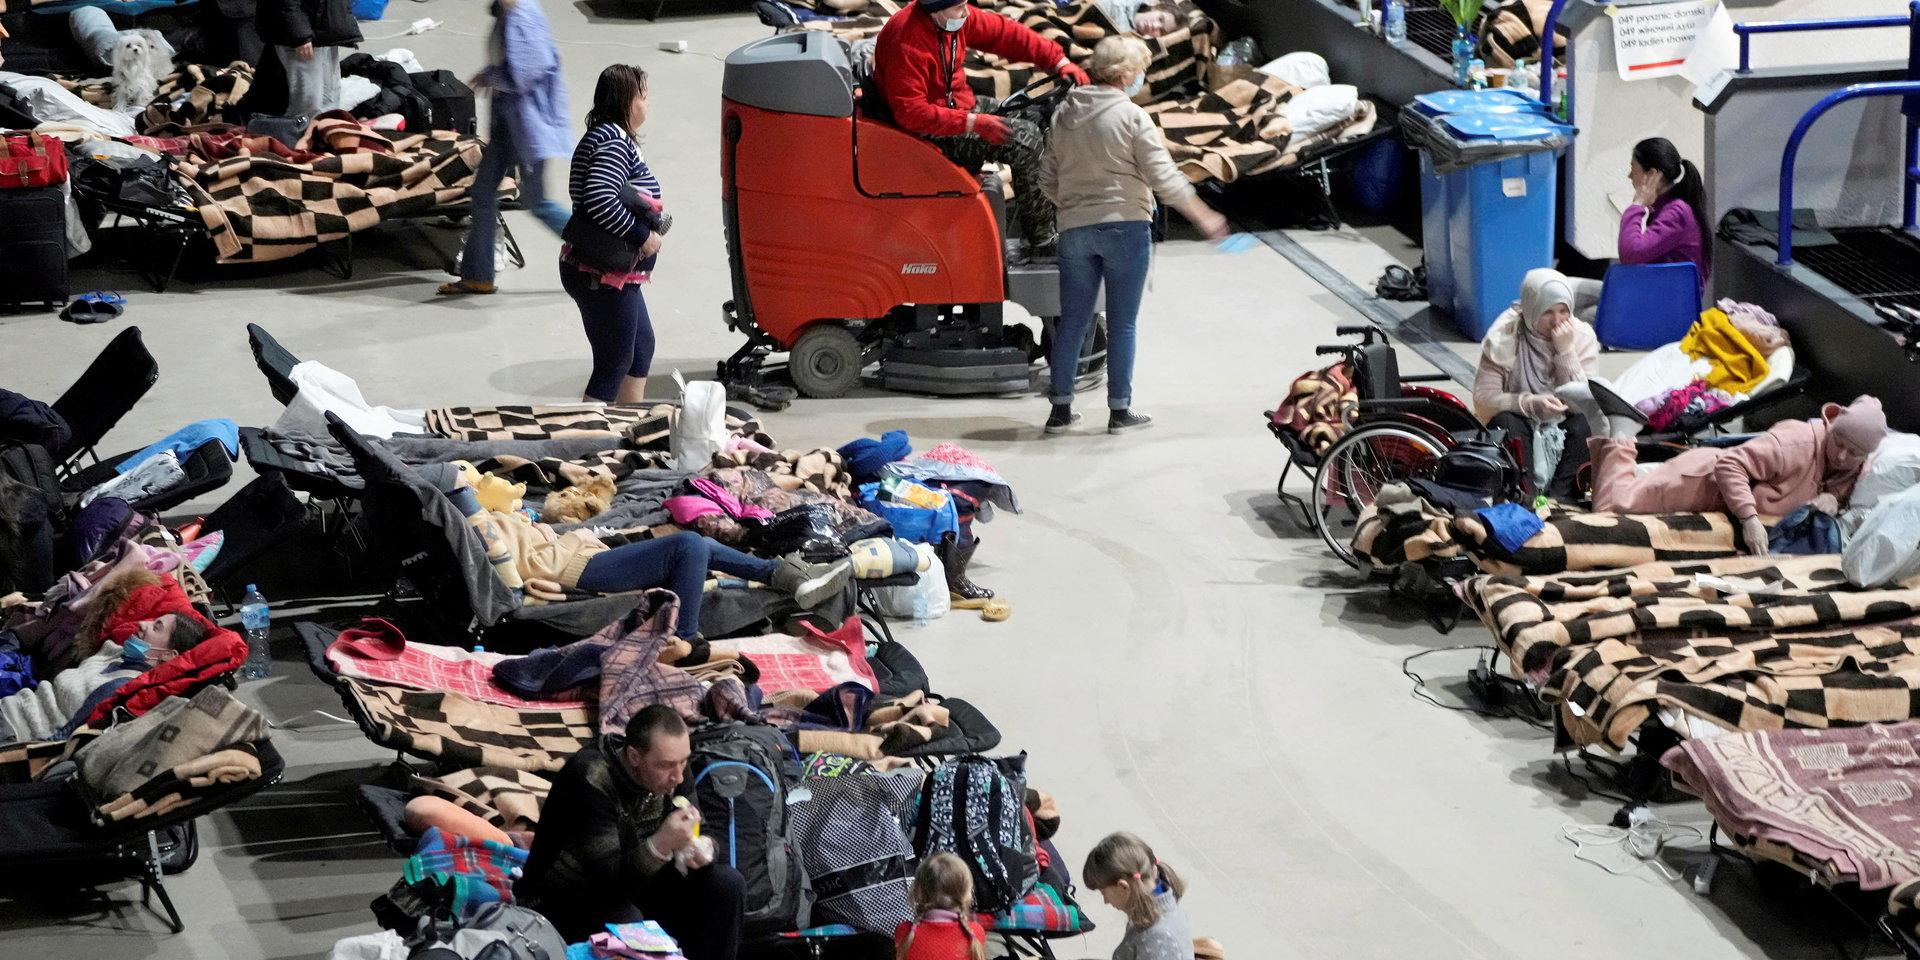 Många människor är på flykt undan kriget i Ukraina. Bilden är från Warszawa i Polen.